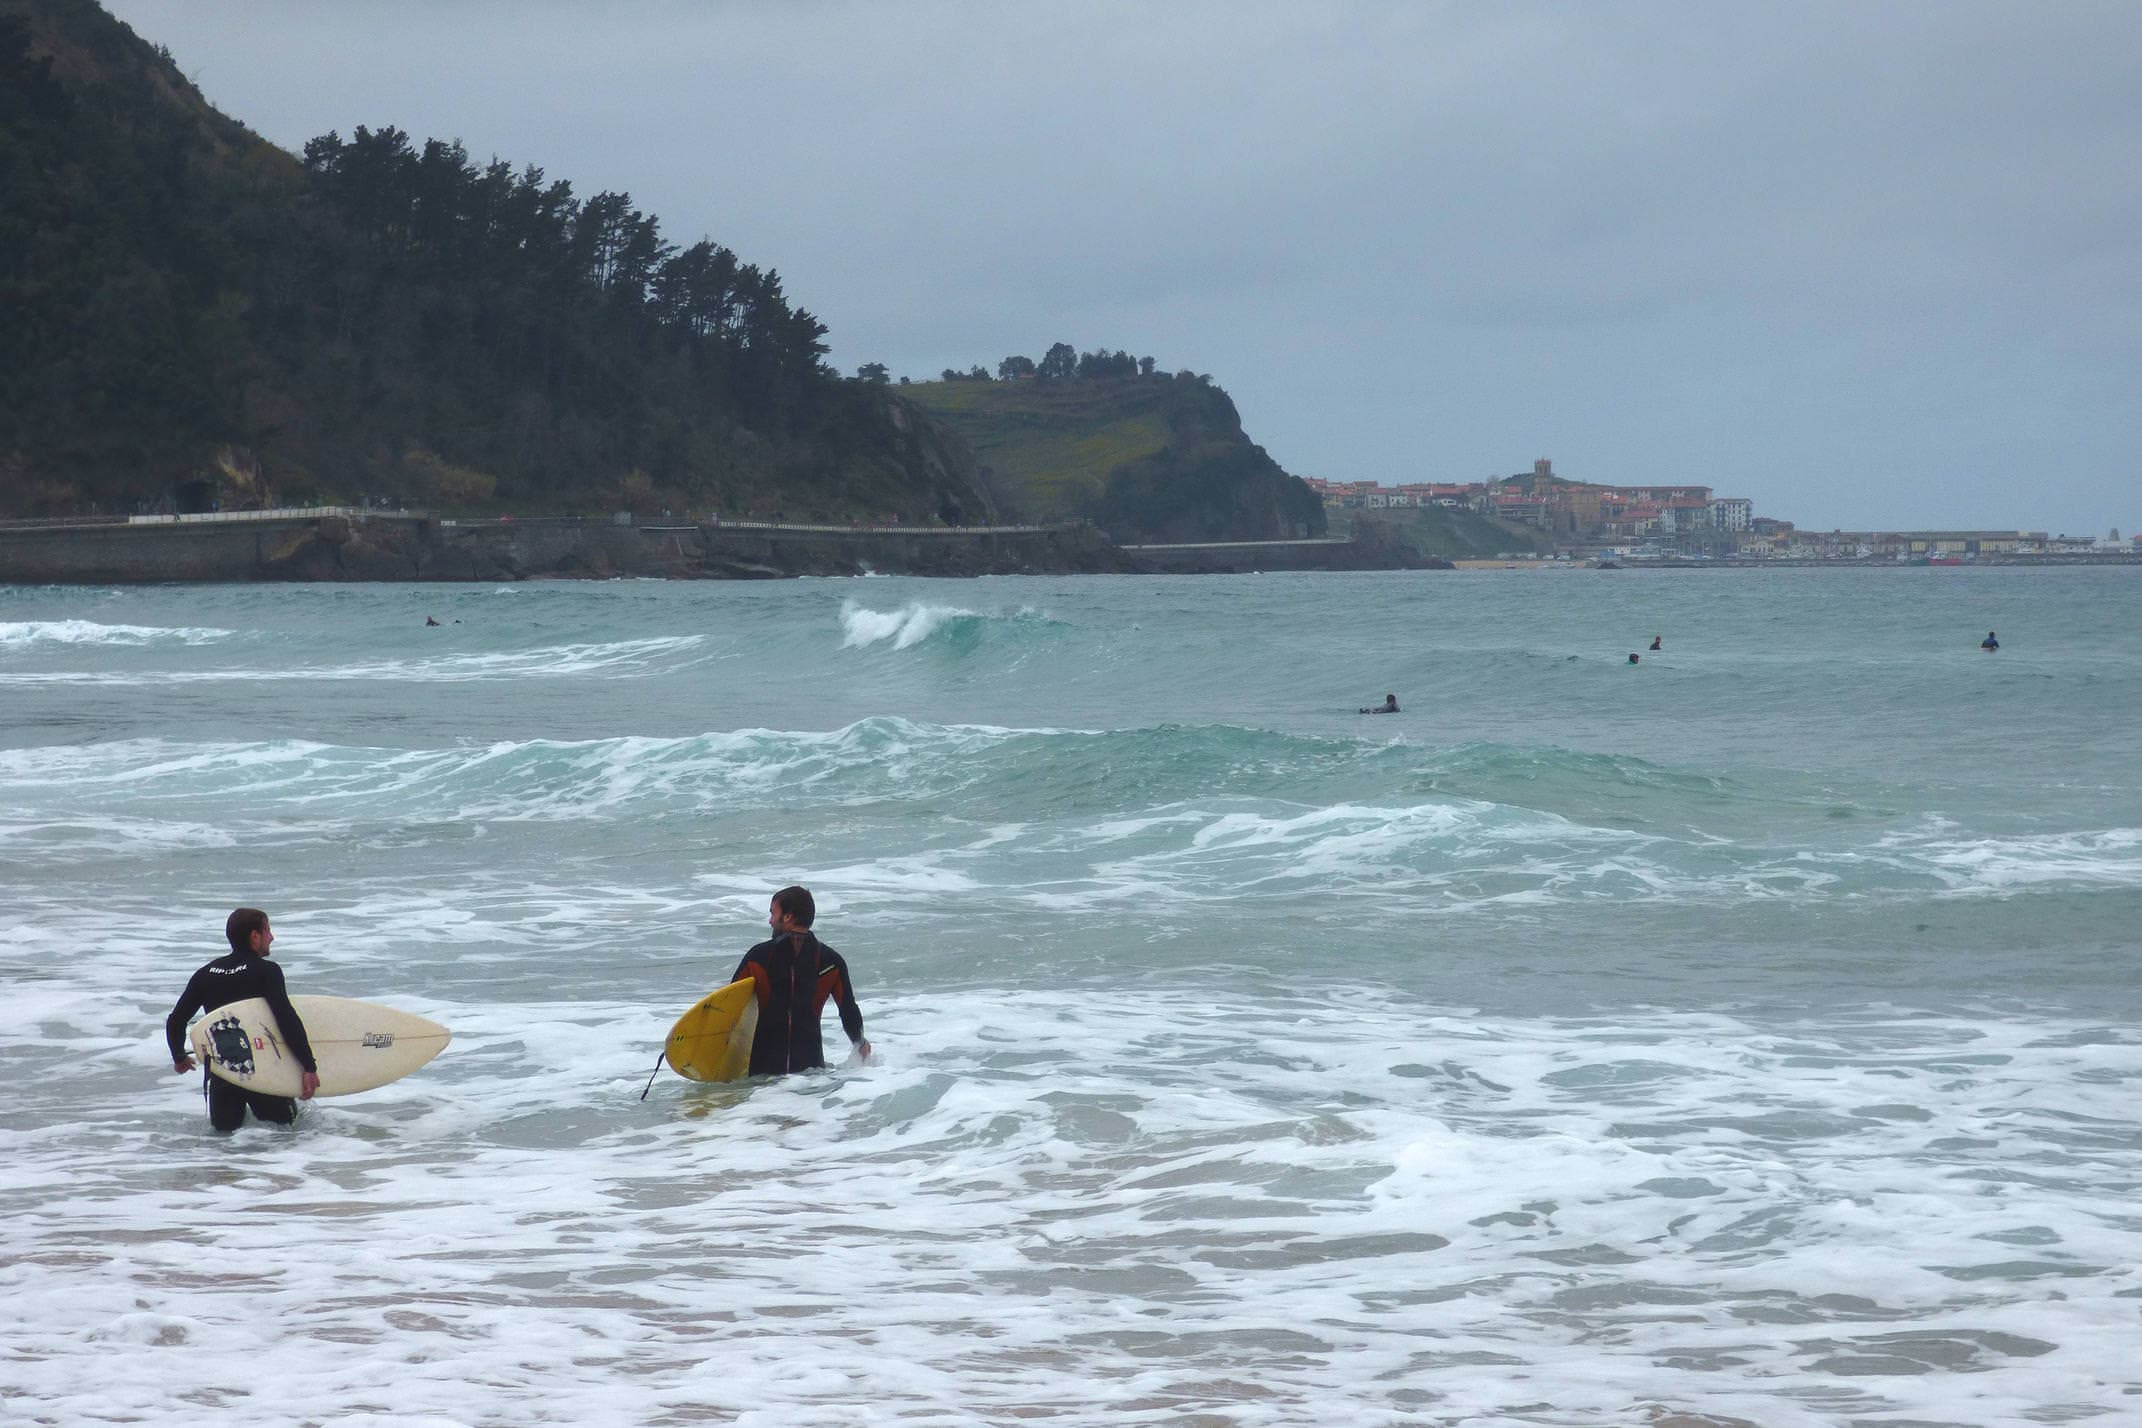 Spain basque country inn to inn zarautz surfers coastal path to getaria